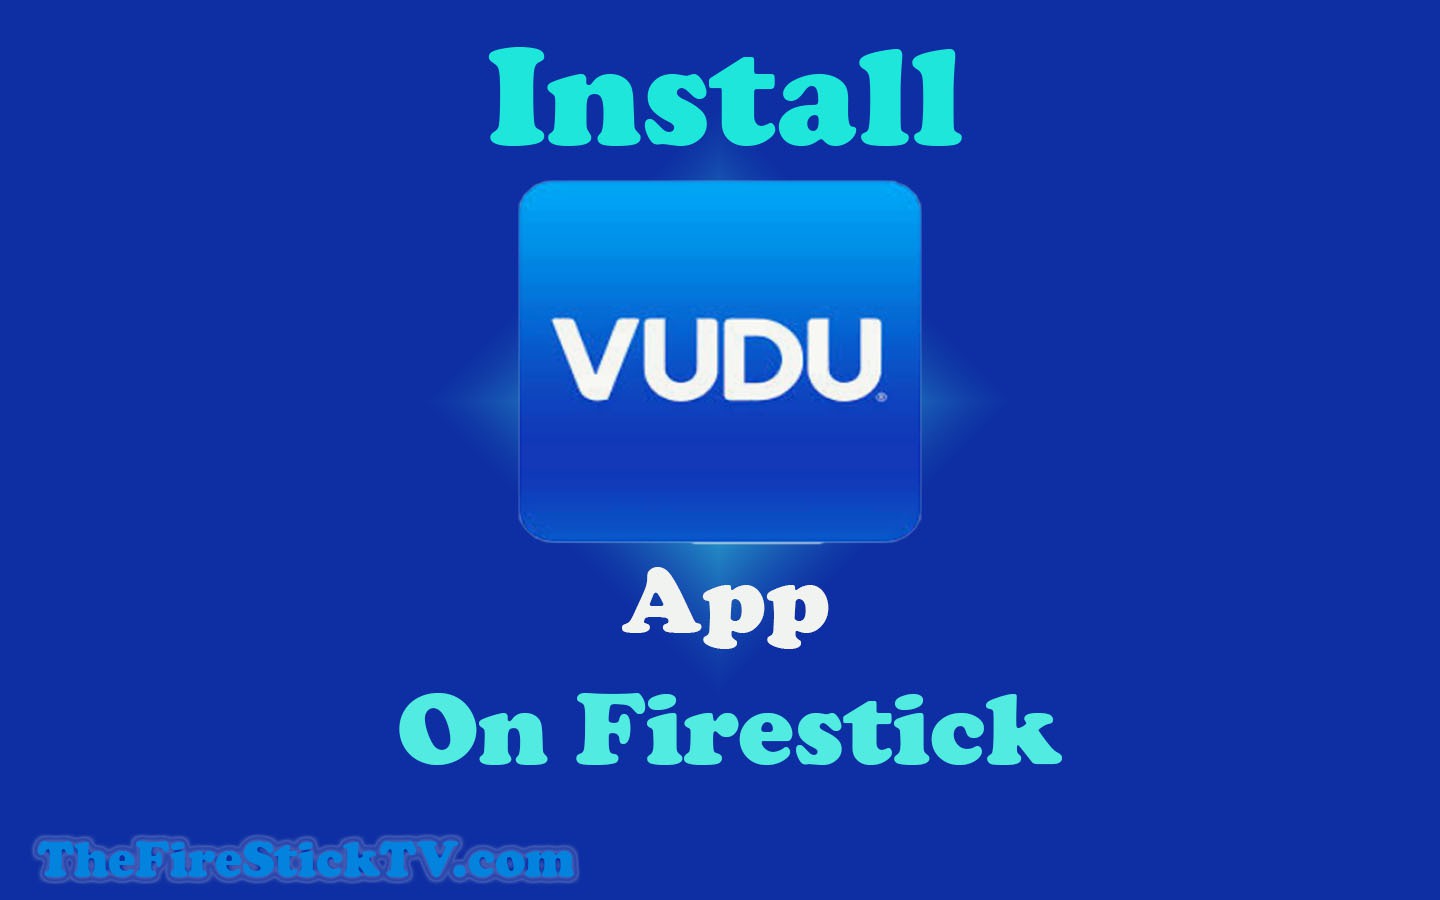 VUDU App